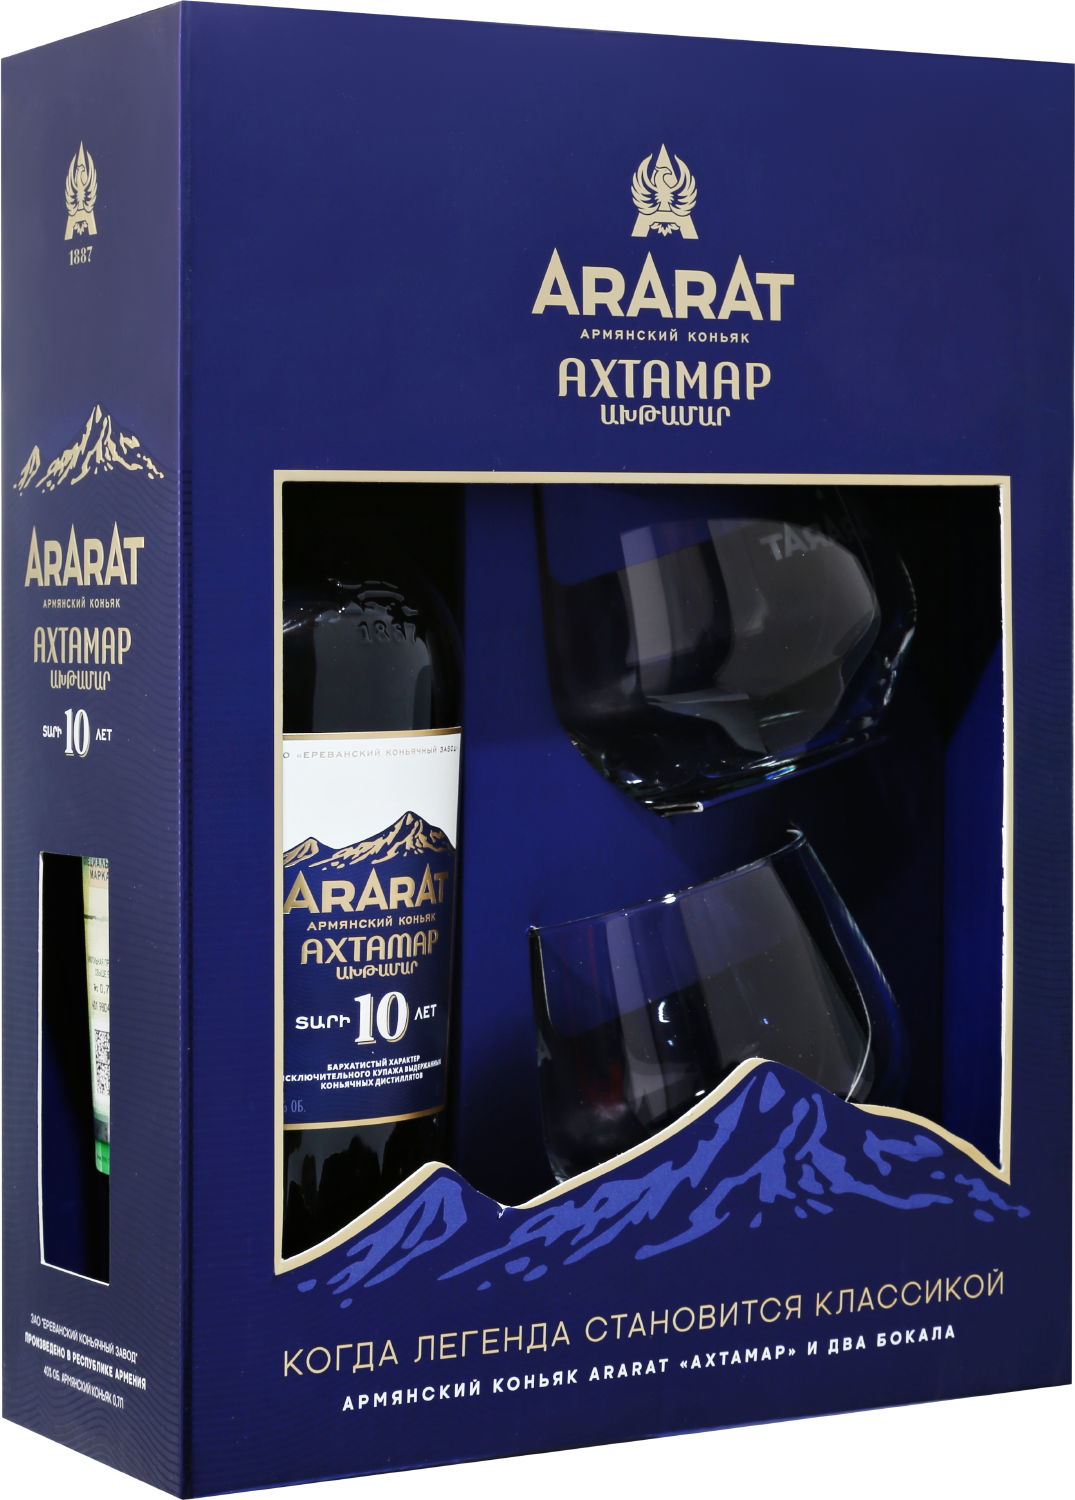 ARARAT Akhtamar 10 y.o. (gift set with 2 glasses)